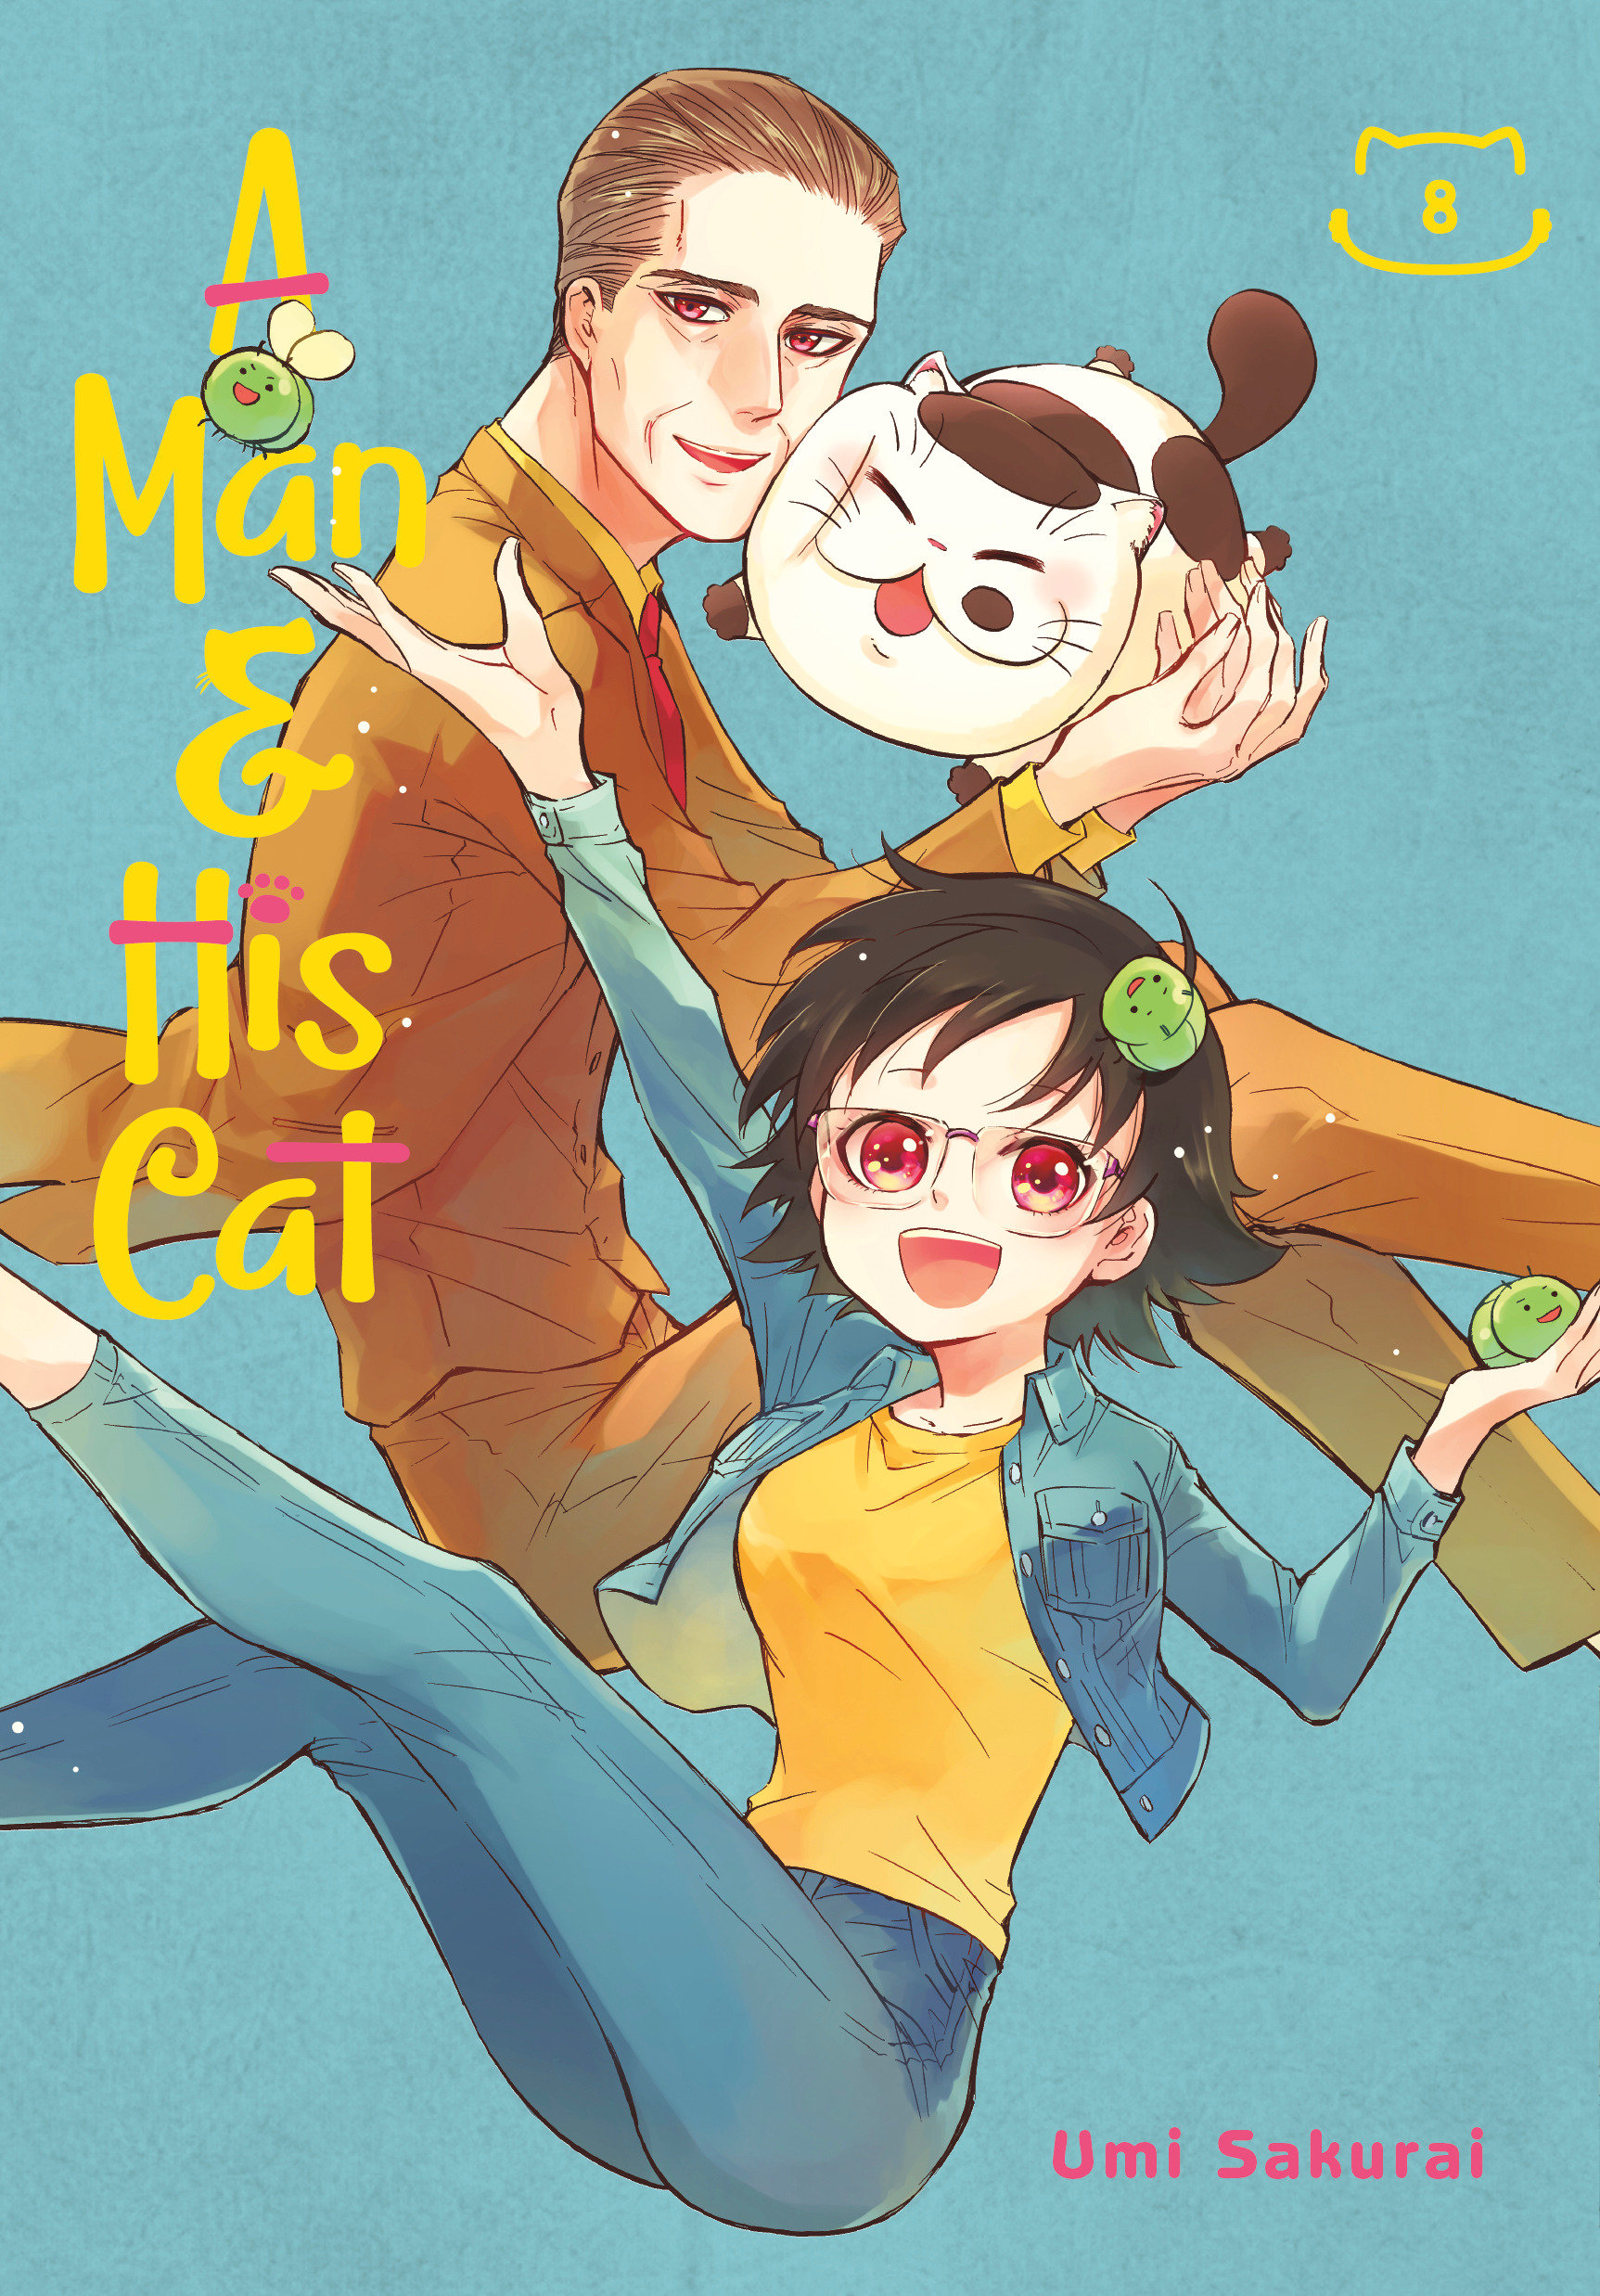 Man and His Cat Manga Volume 8